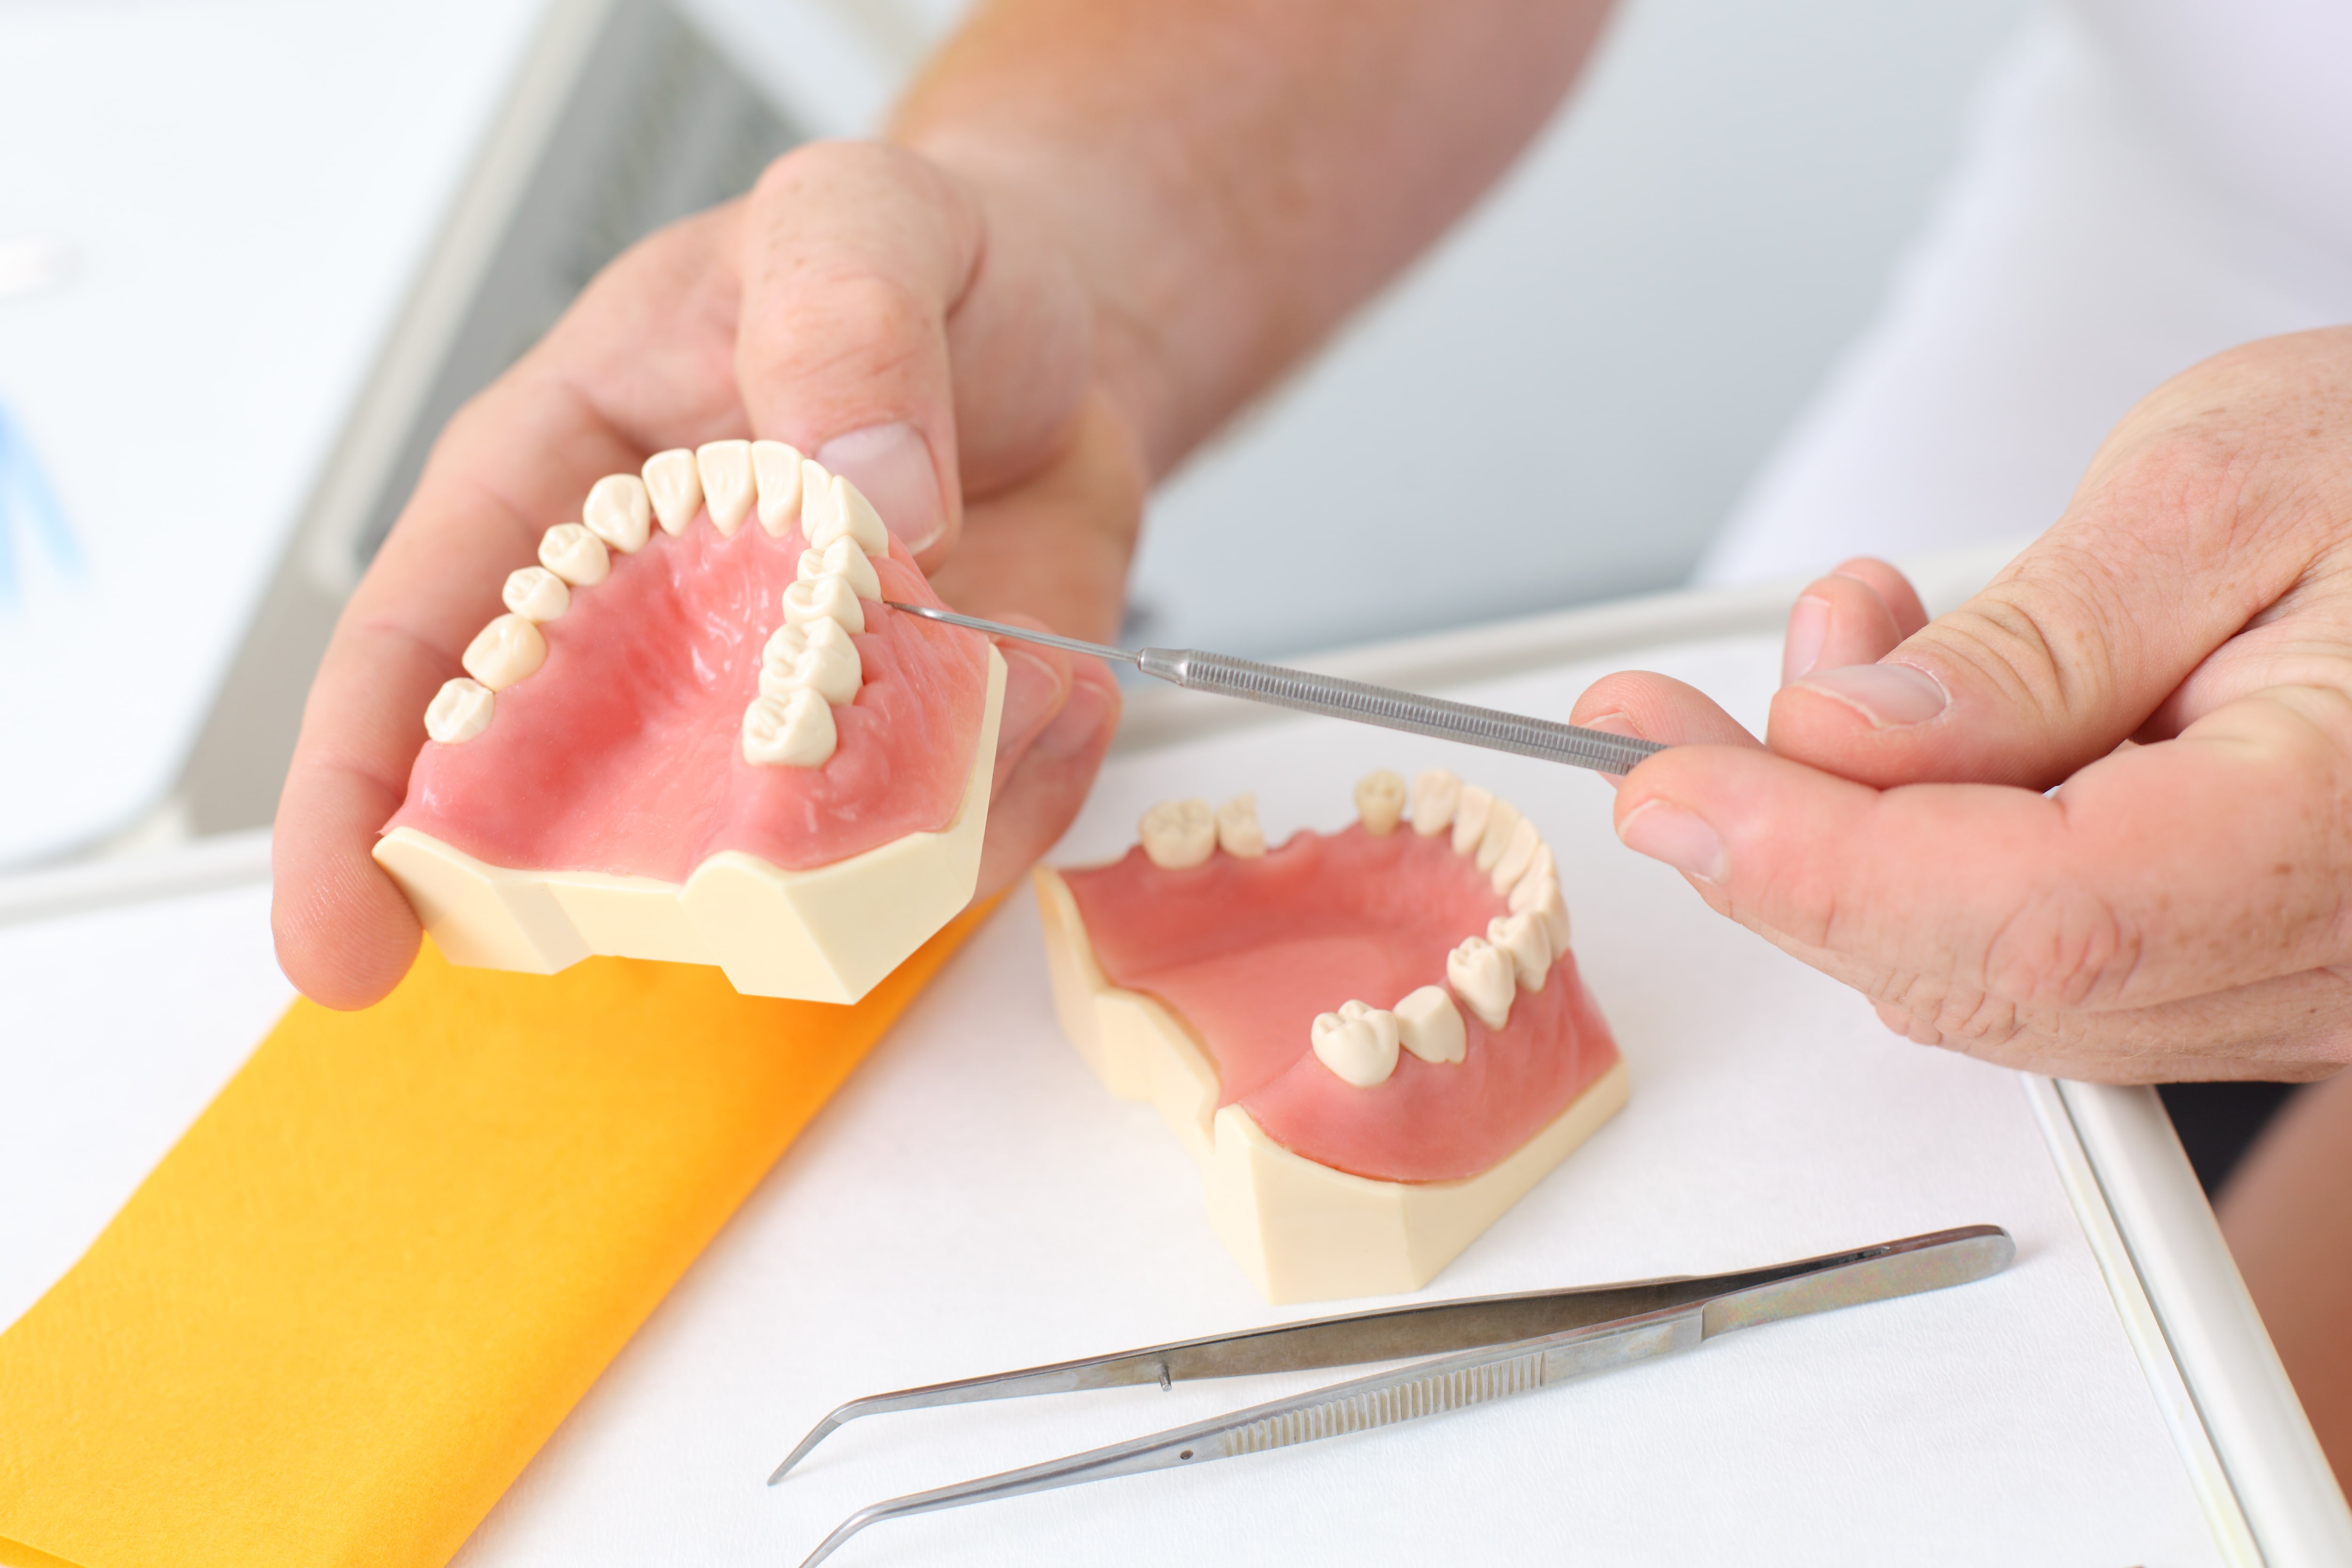 4 Types of Teeth